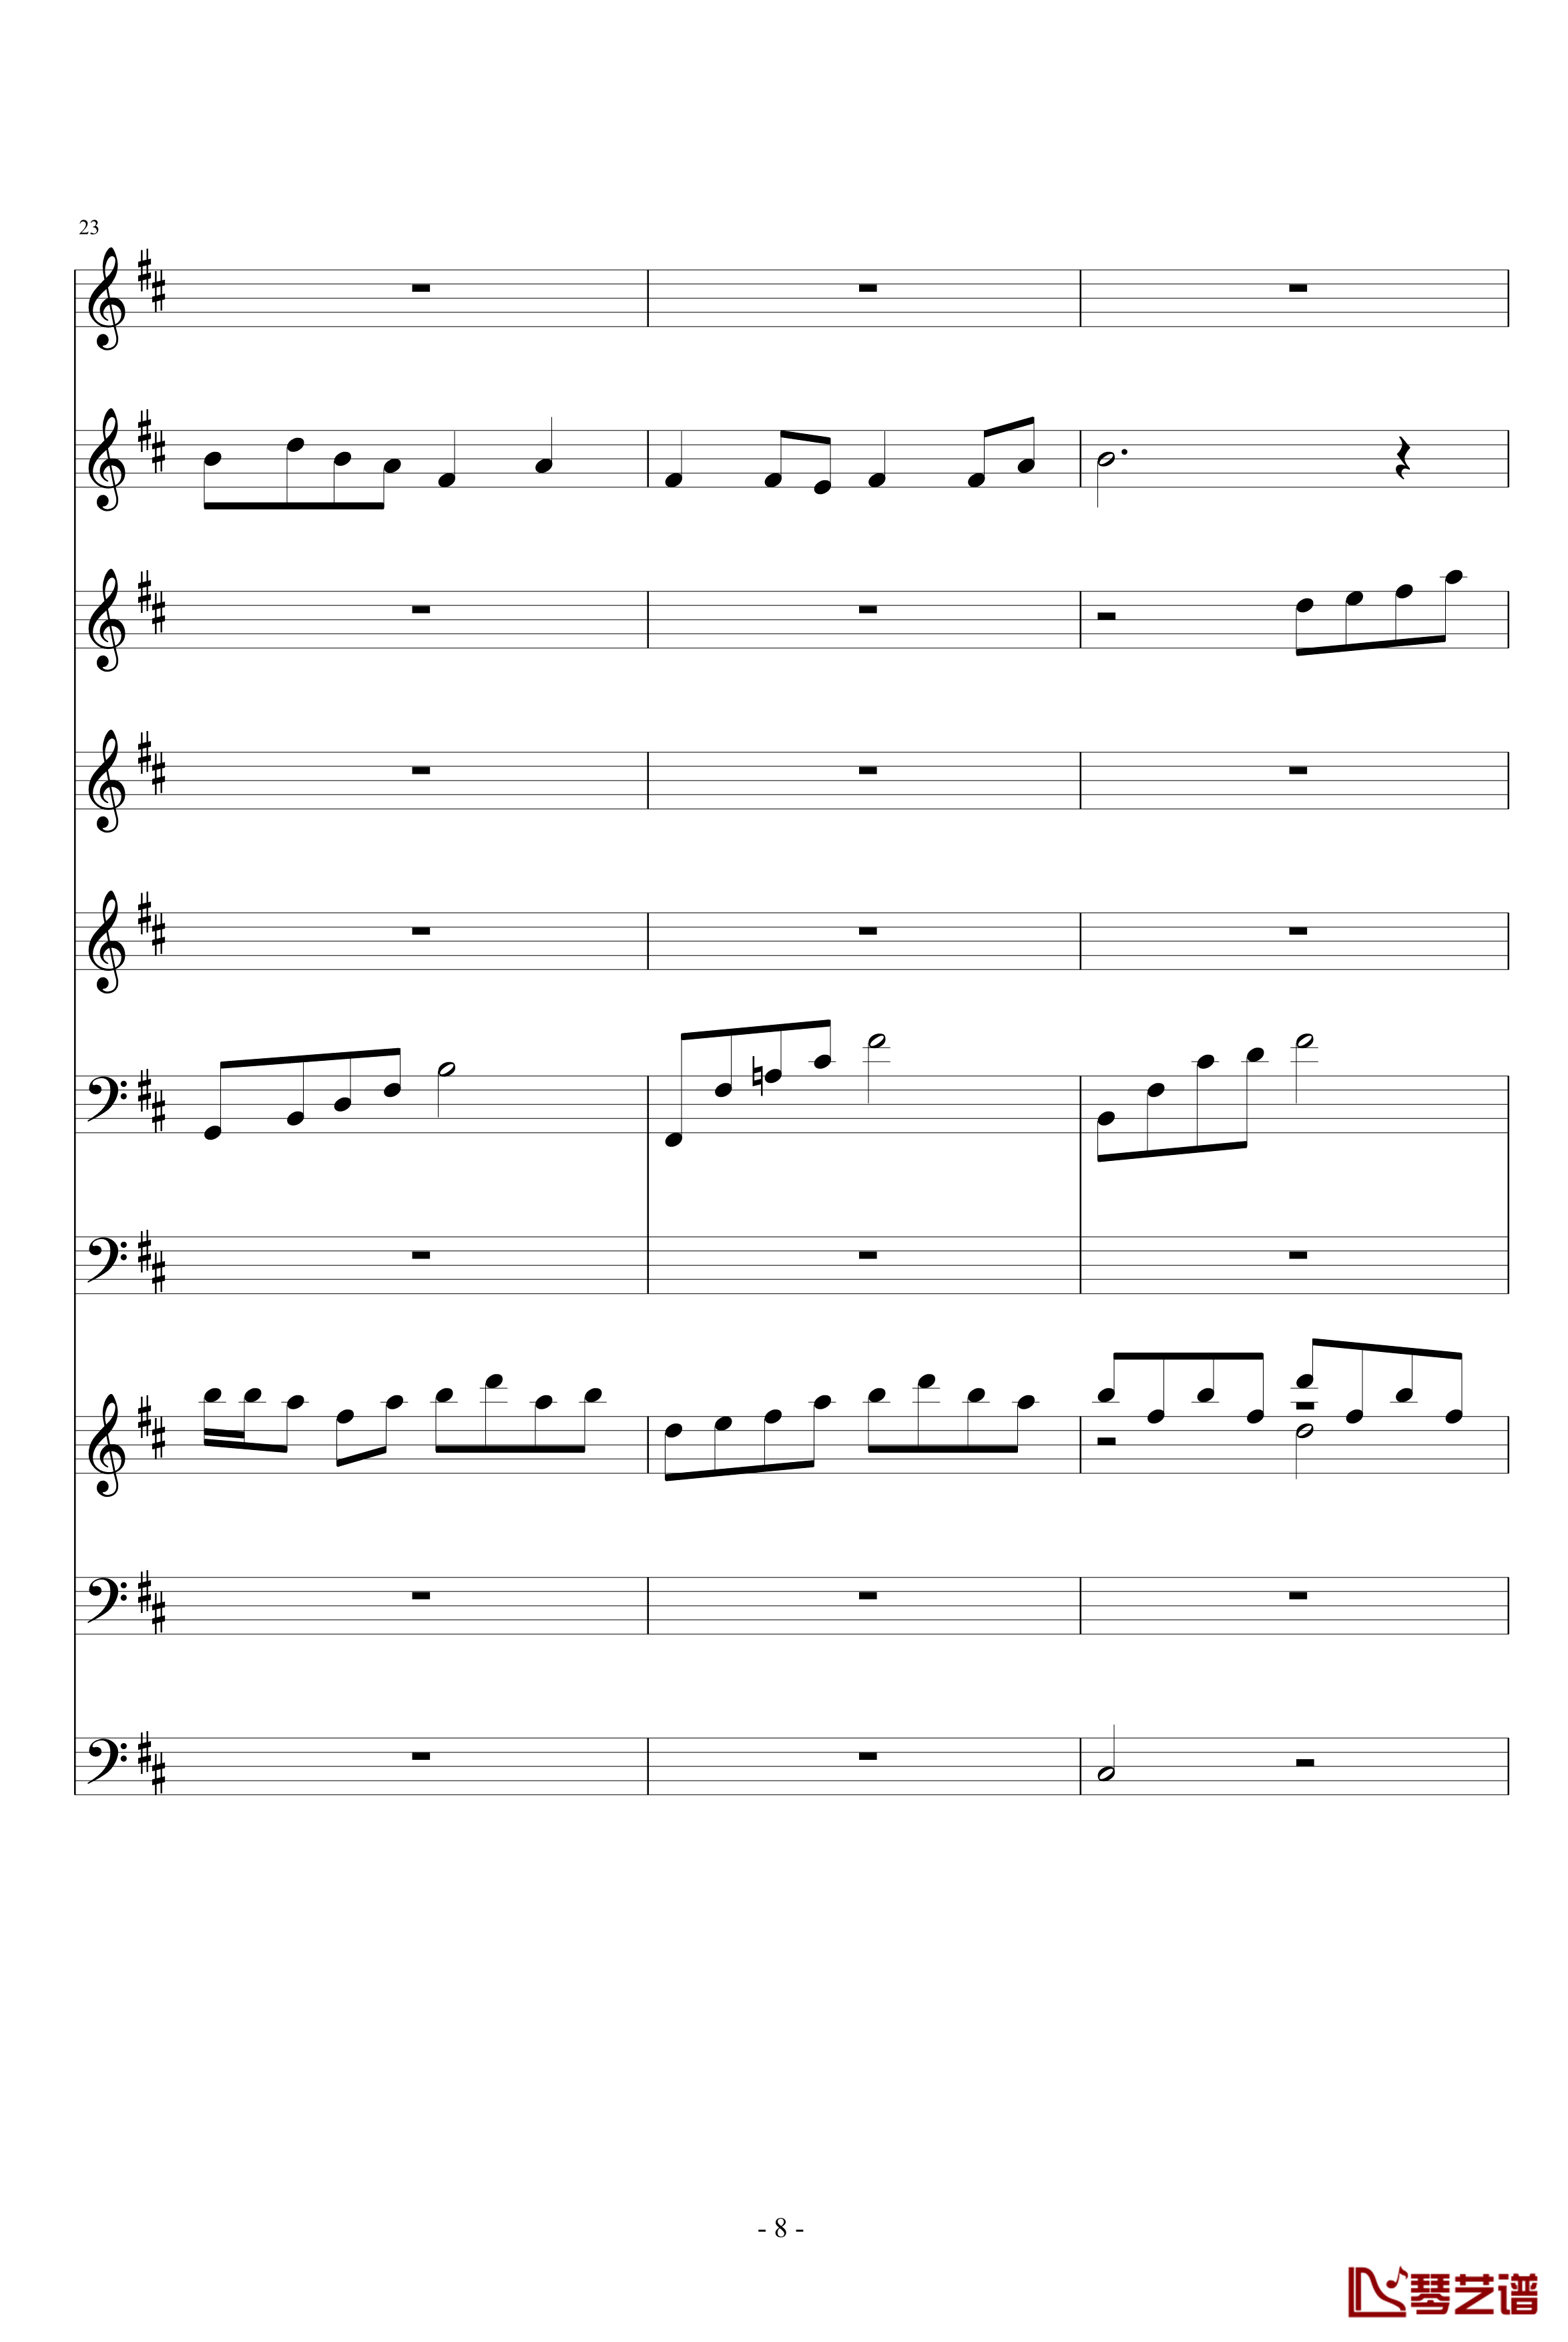 月落暗香坡钢琴谱-巴乌、笛子、琵琶、二胡、古筝-peterkingily8